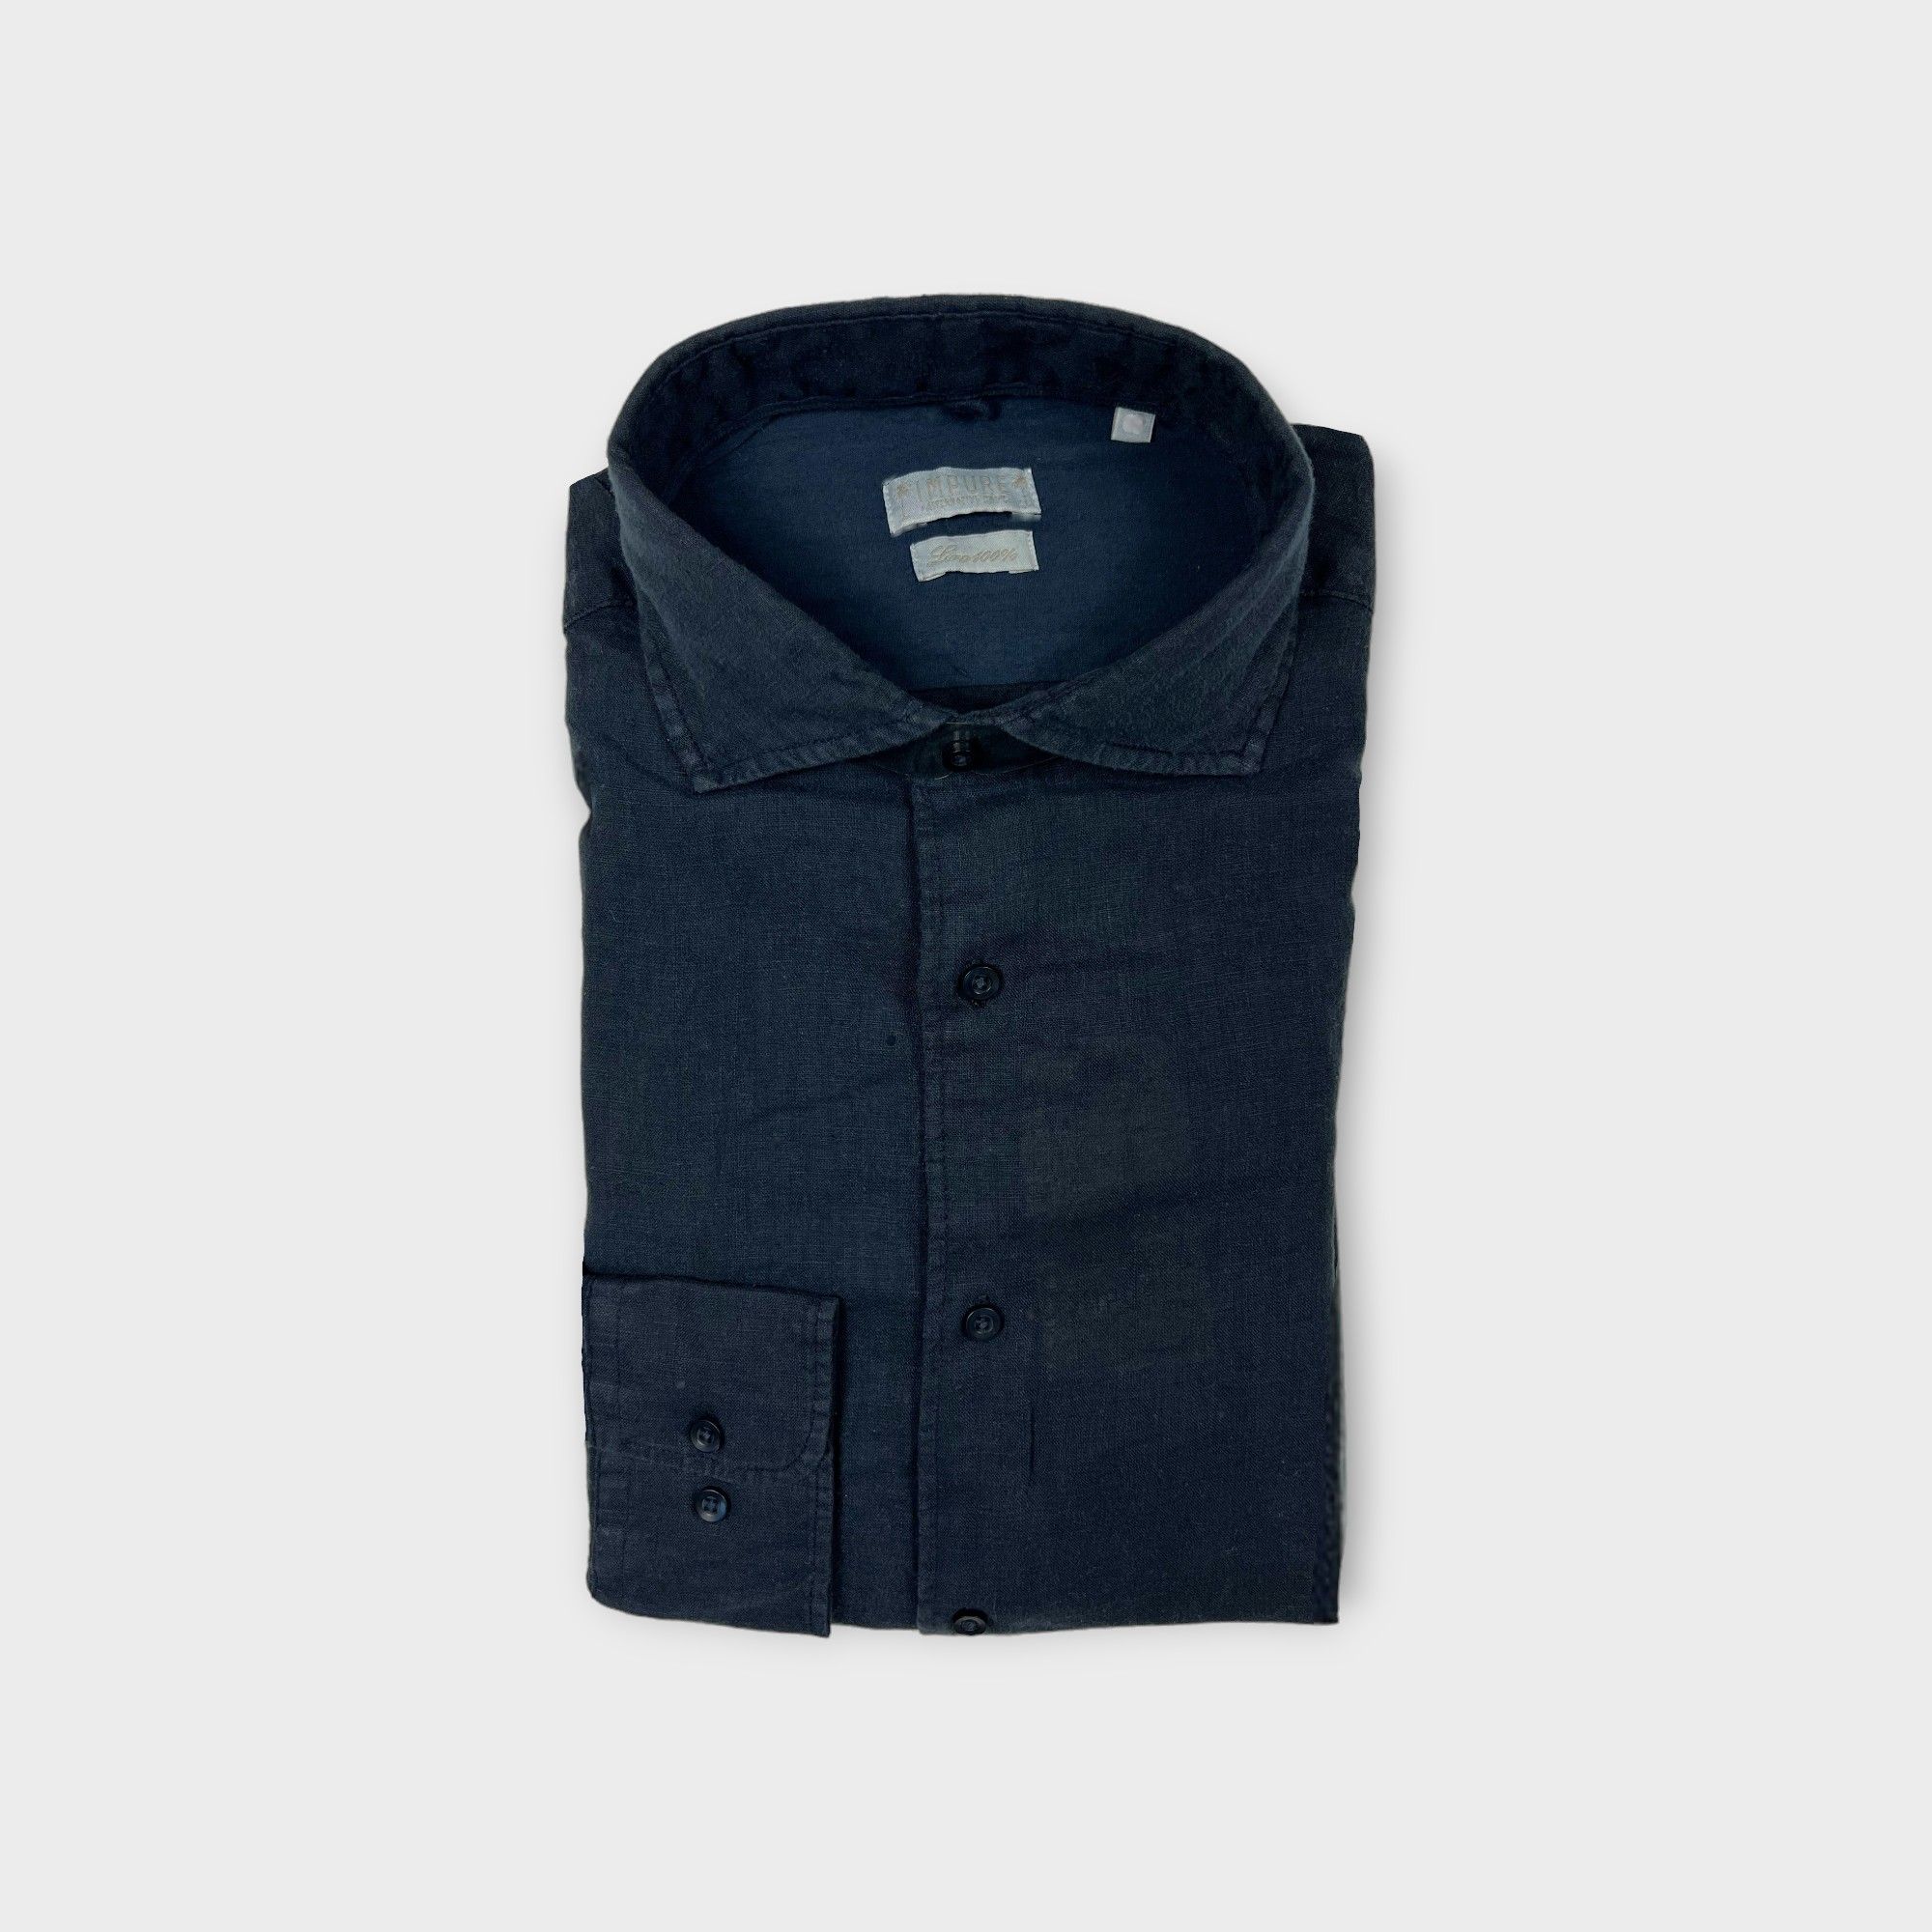 images/virtuemart/product/IMPURE EREDI PISCOPO Camicia in lino da uomo collo francese colore blu 1.jpg